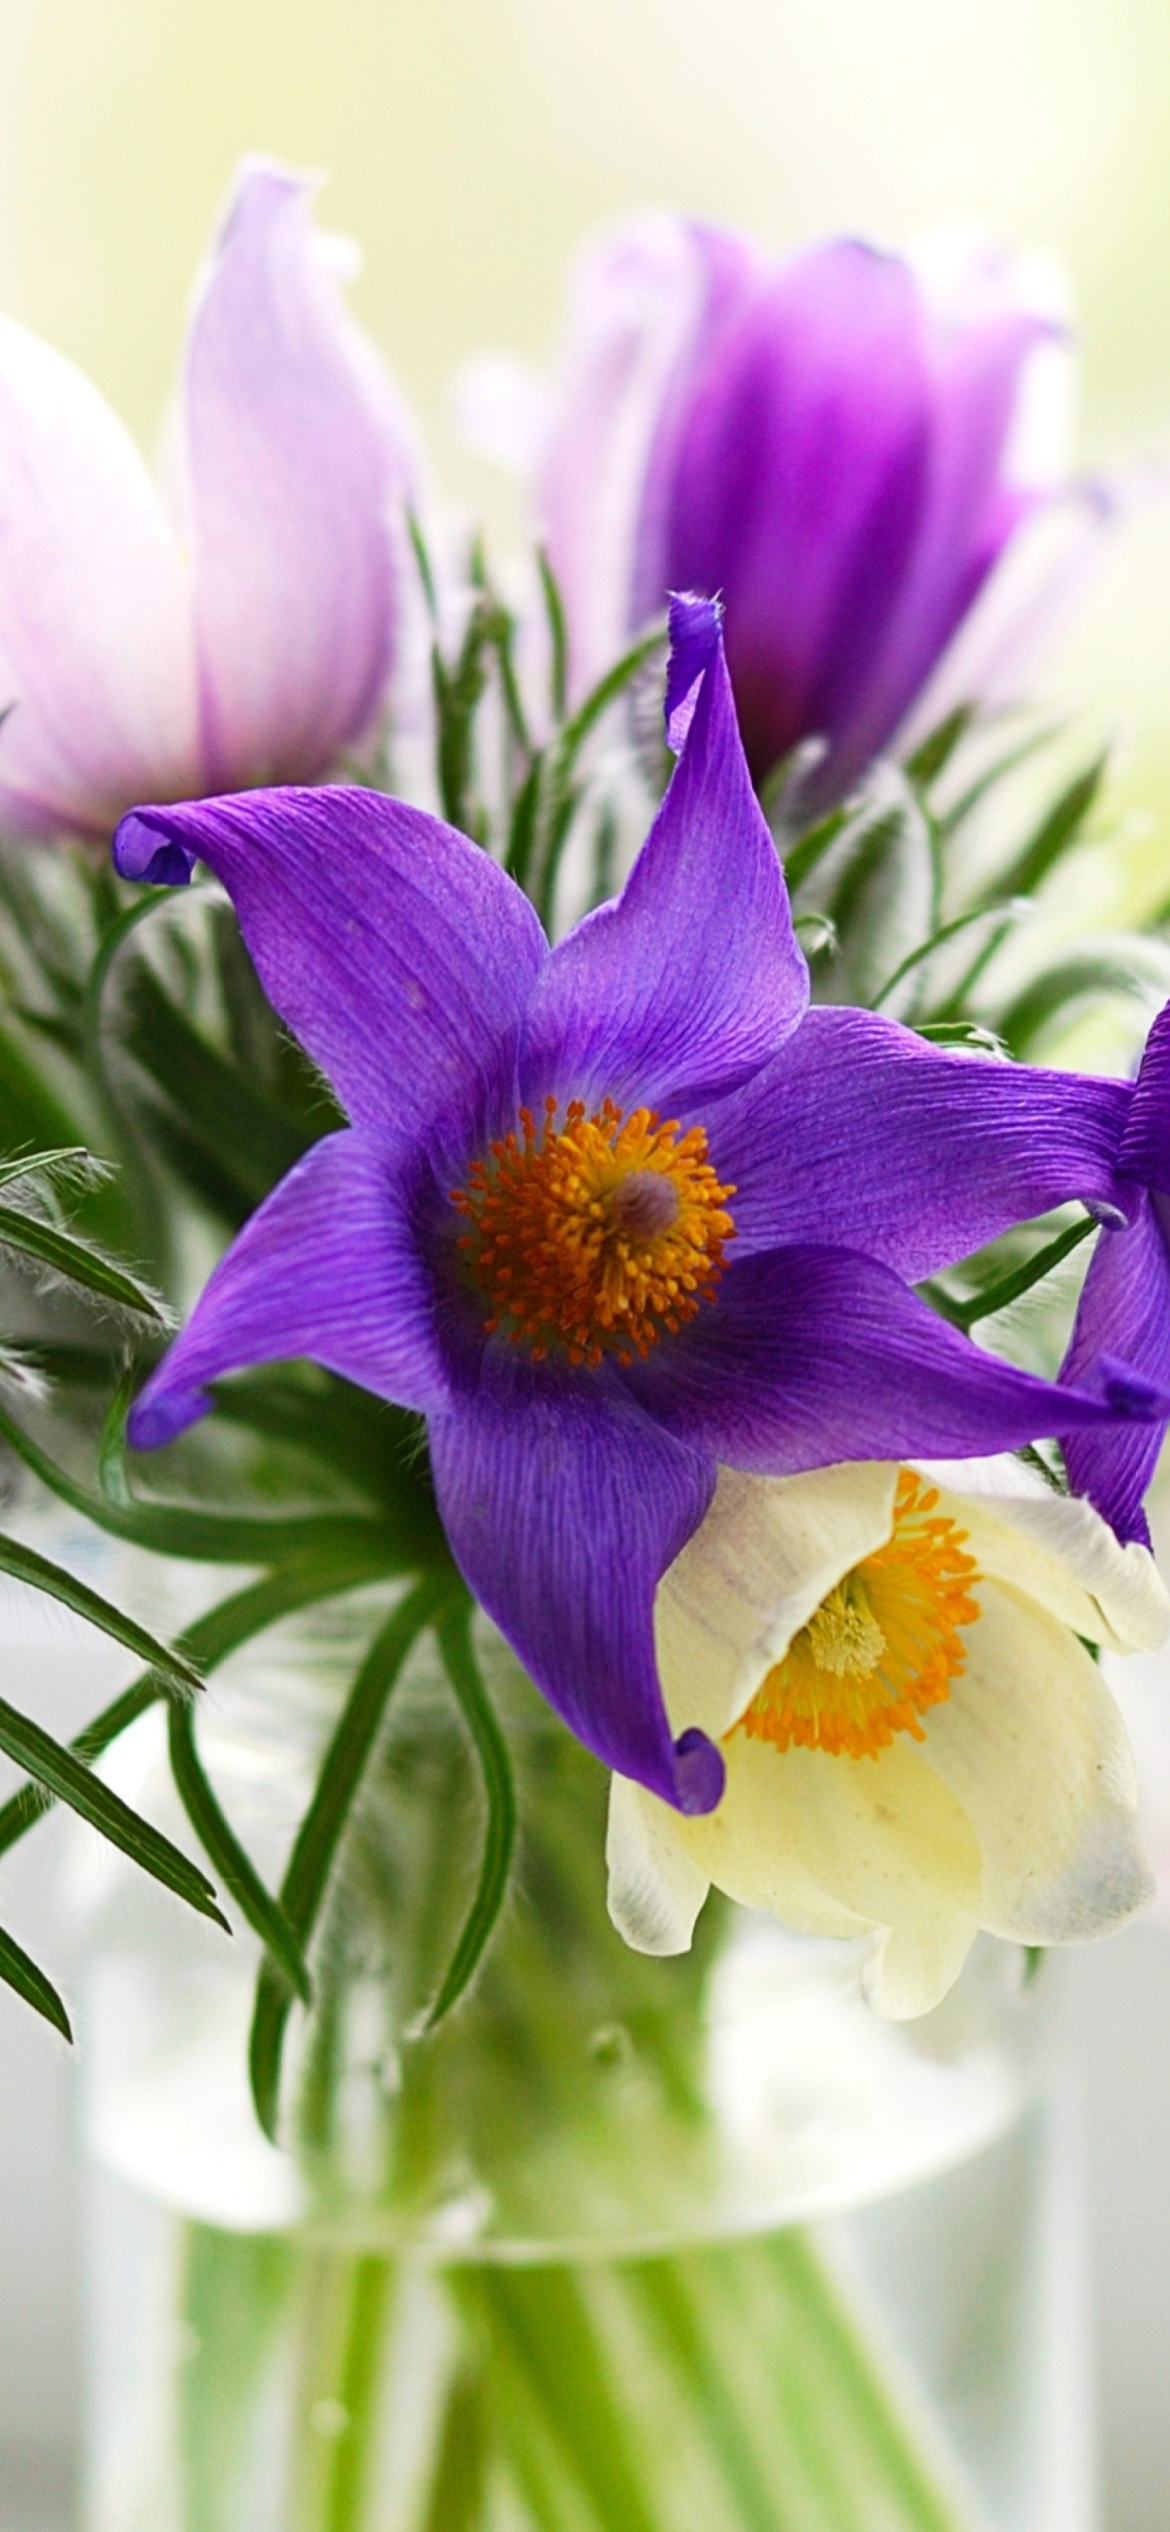 Обои Purple Pulsatilla Flowers 1170x2532